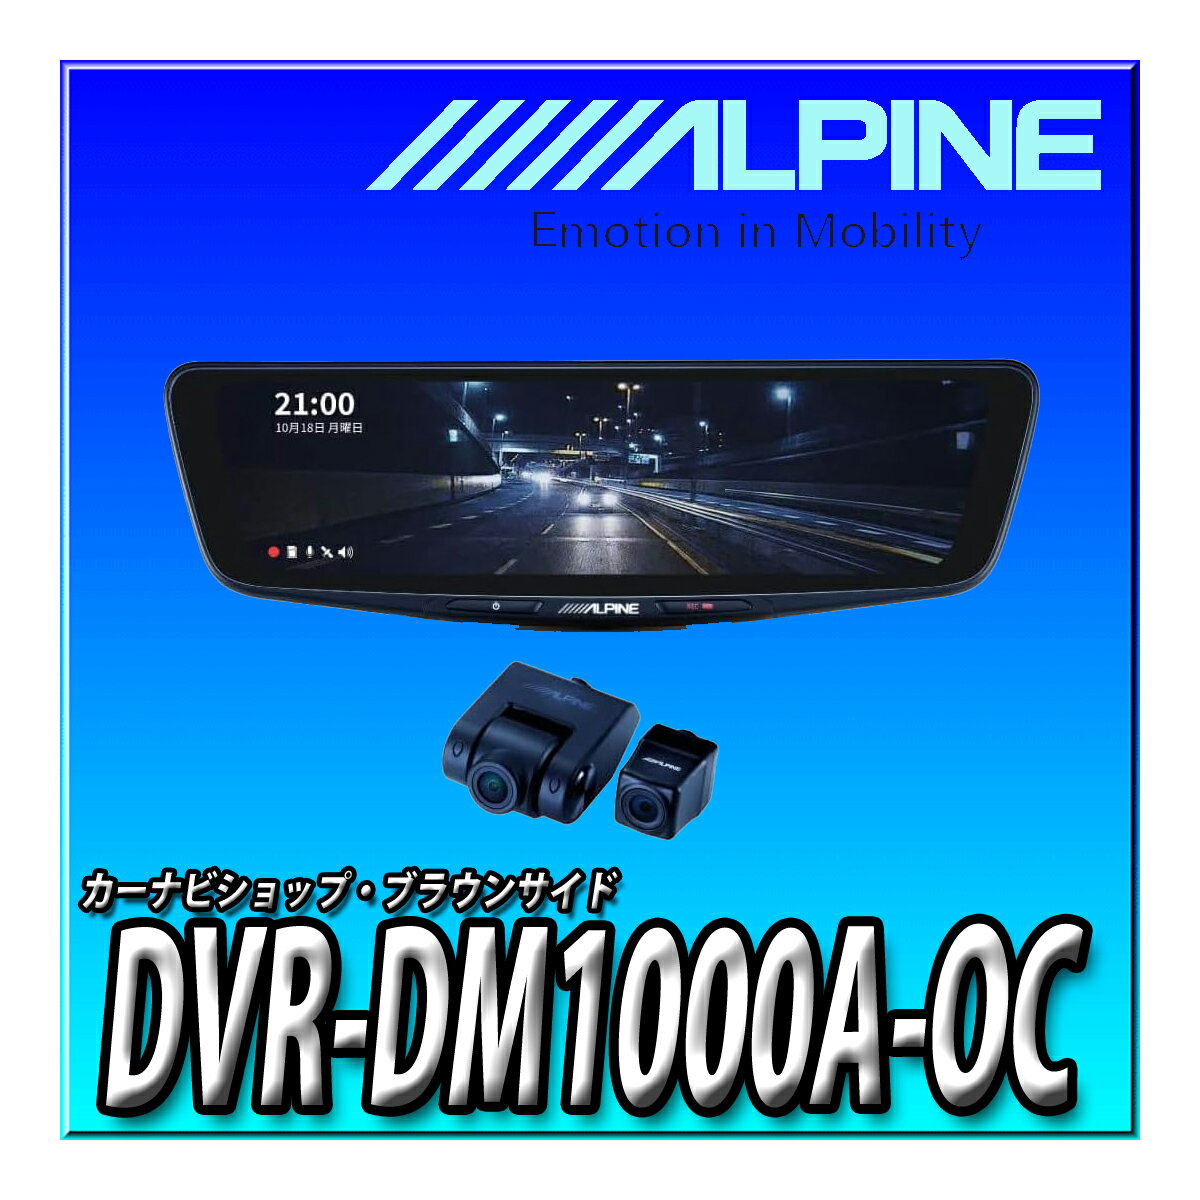 DVR-DM1000A-OC アルパイン(ALPINE) ドライブレコーダー搭載 10インチデジタルミラー(純正ミラー交換タイプ/車外リアカメラ) DVR-DM1000A-OC 【取付キット別売】